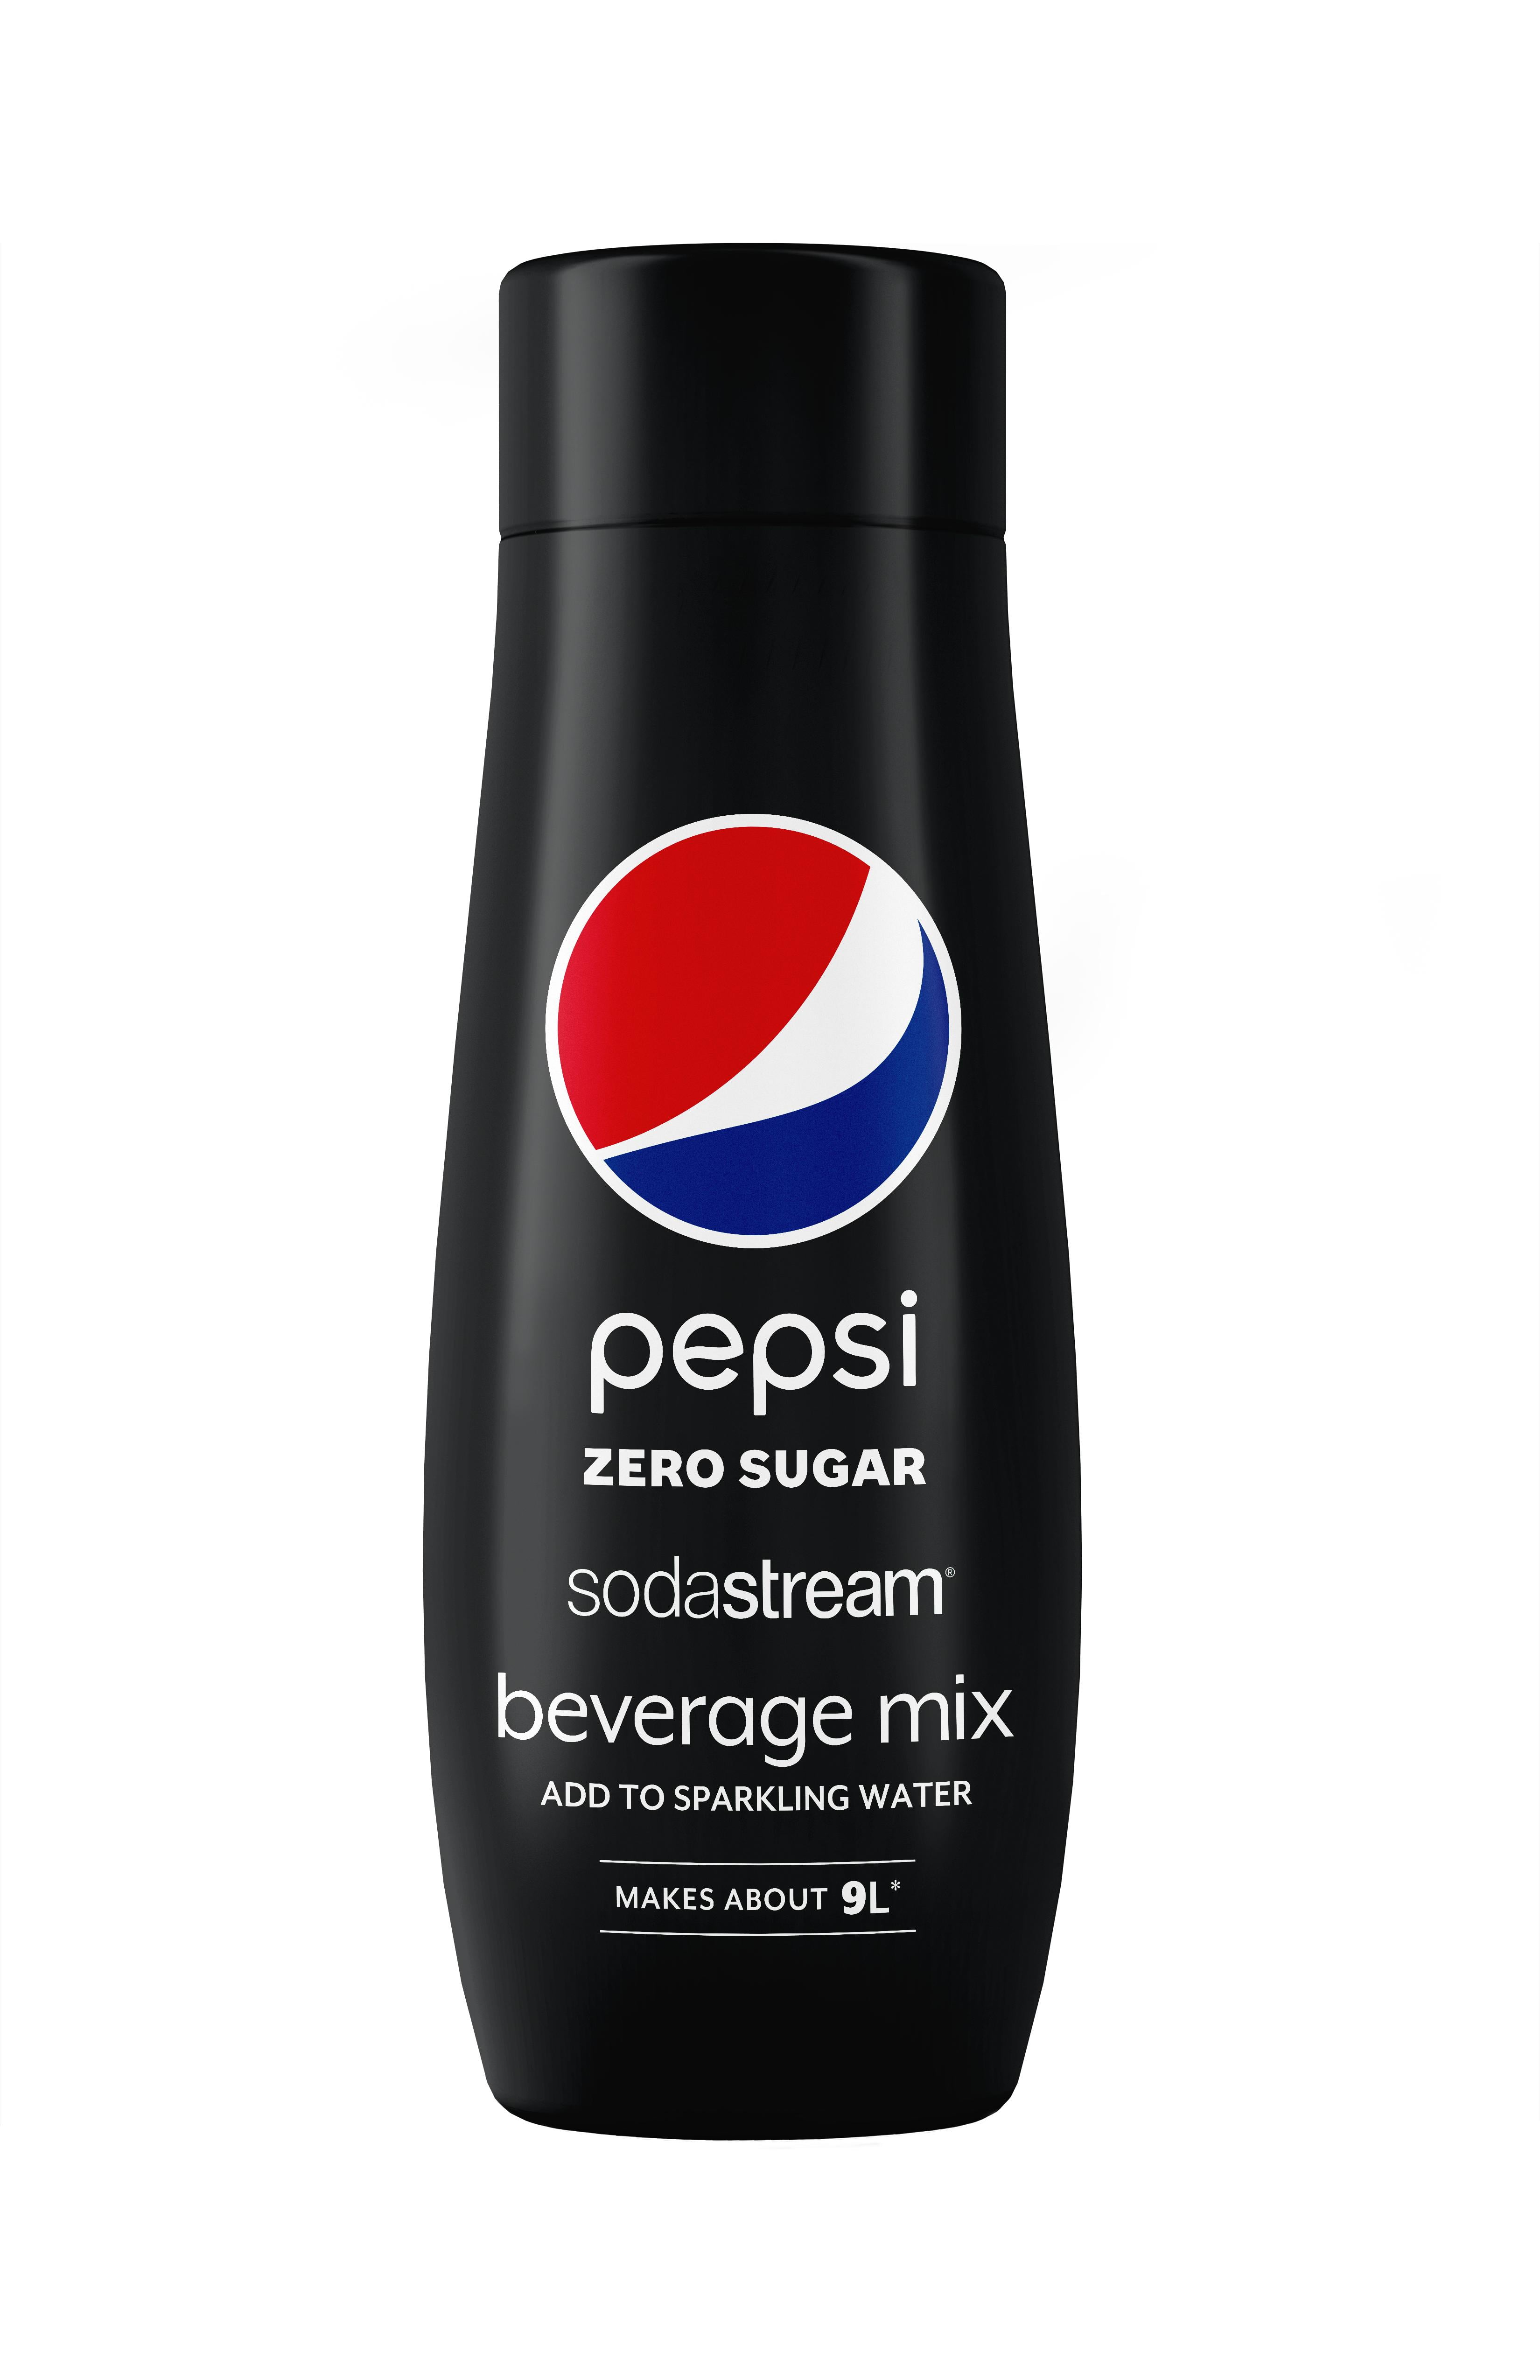 Sodastream Diet Pepsi Soda Mix 440 ml 1924217010